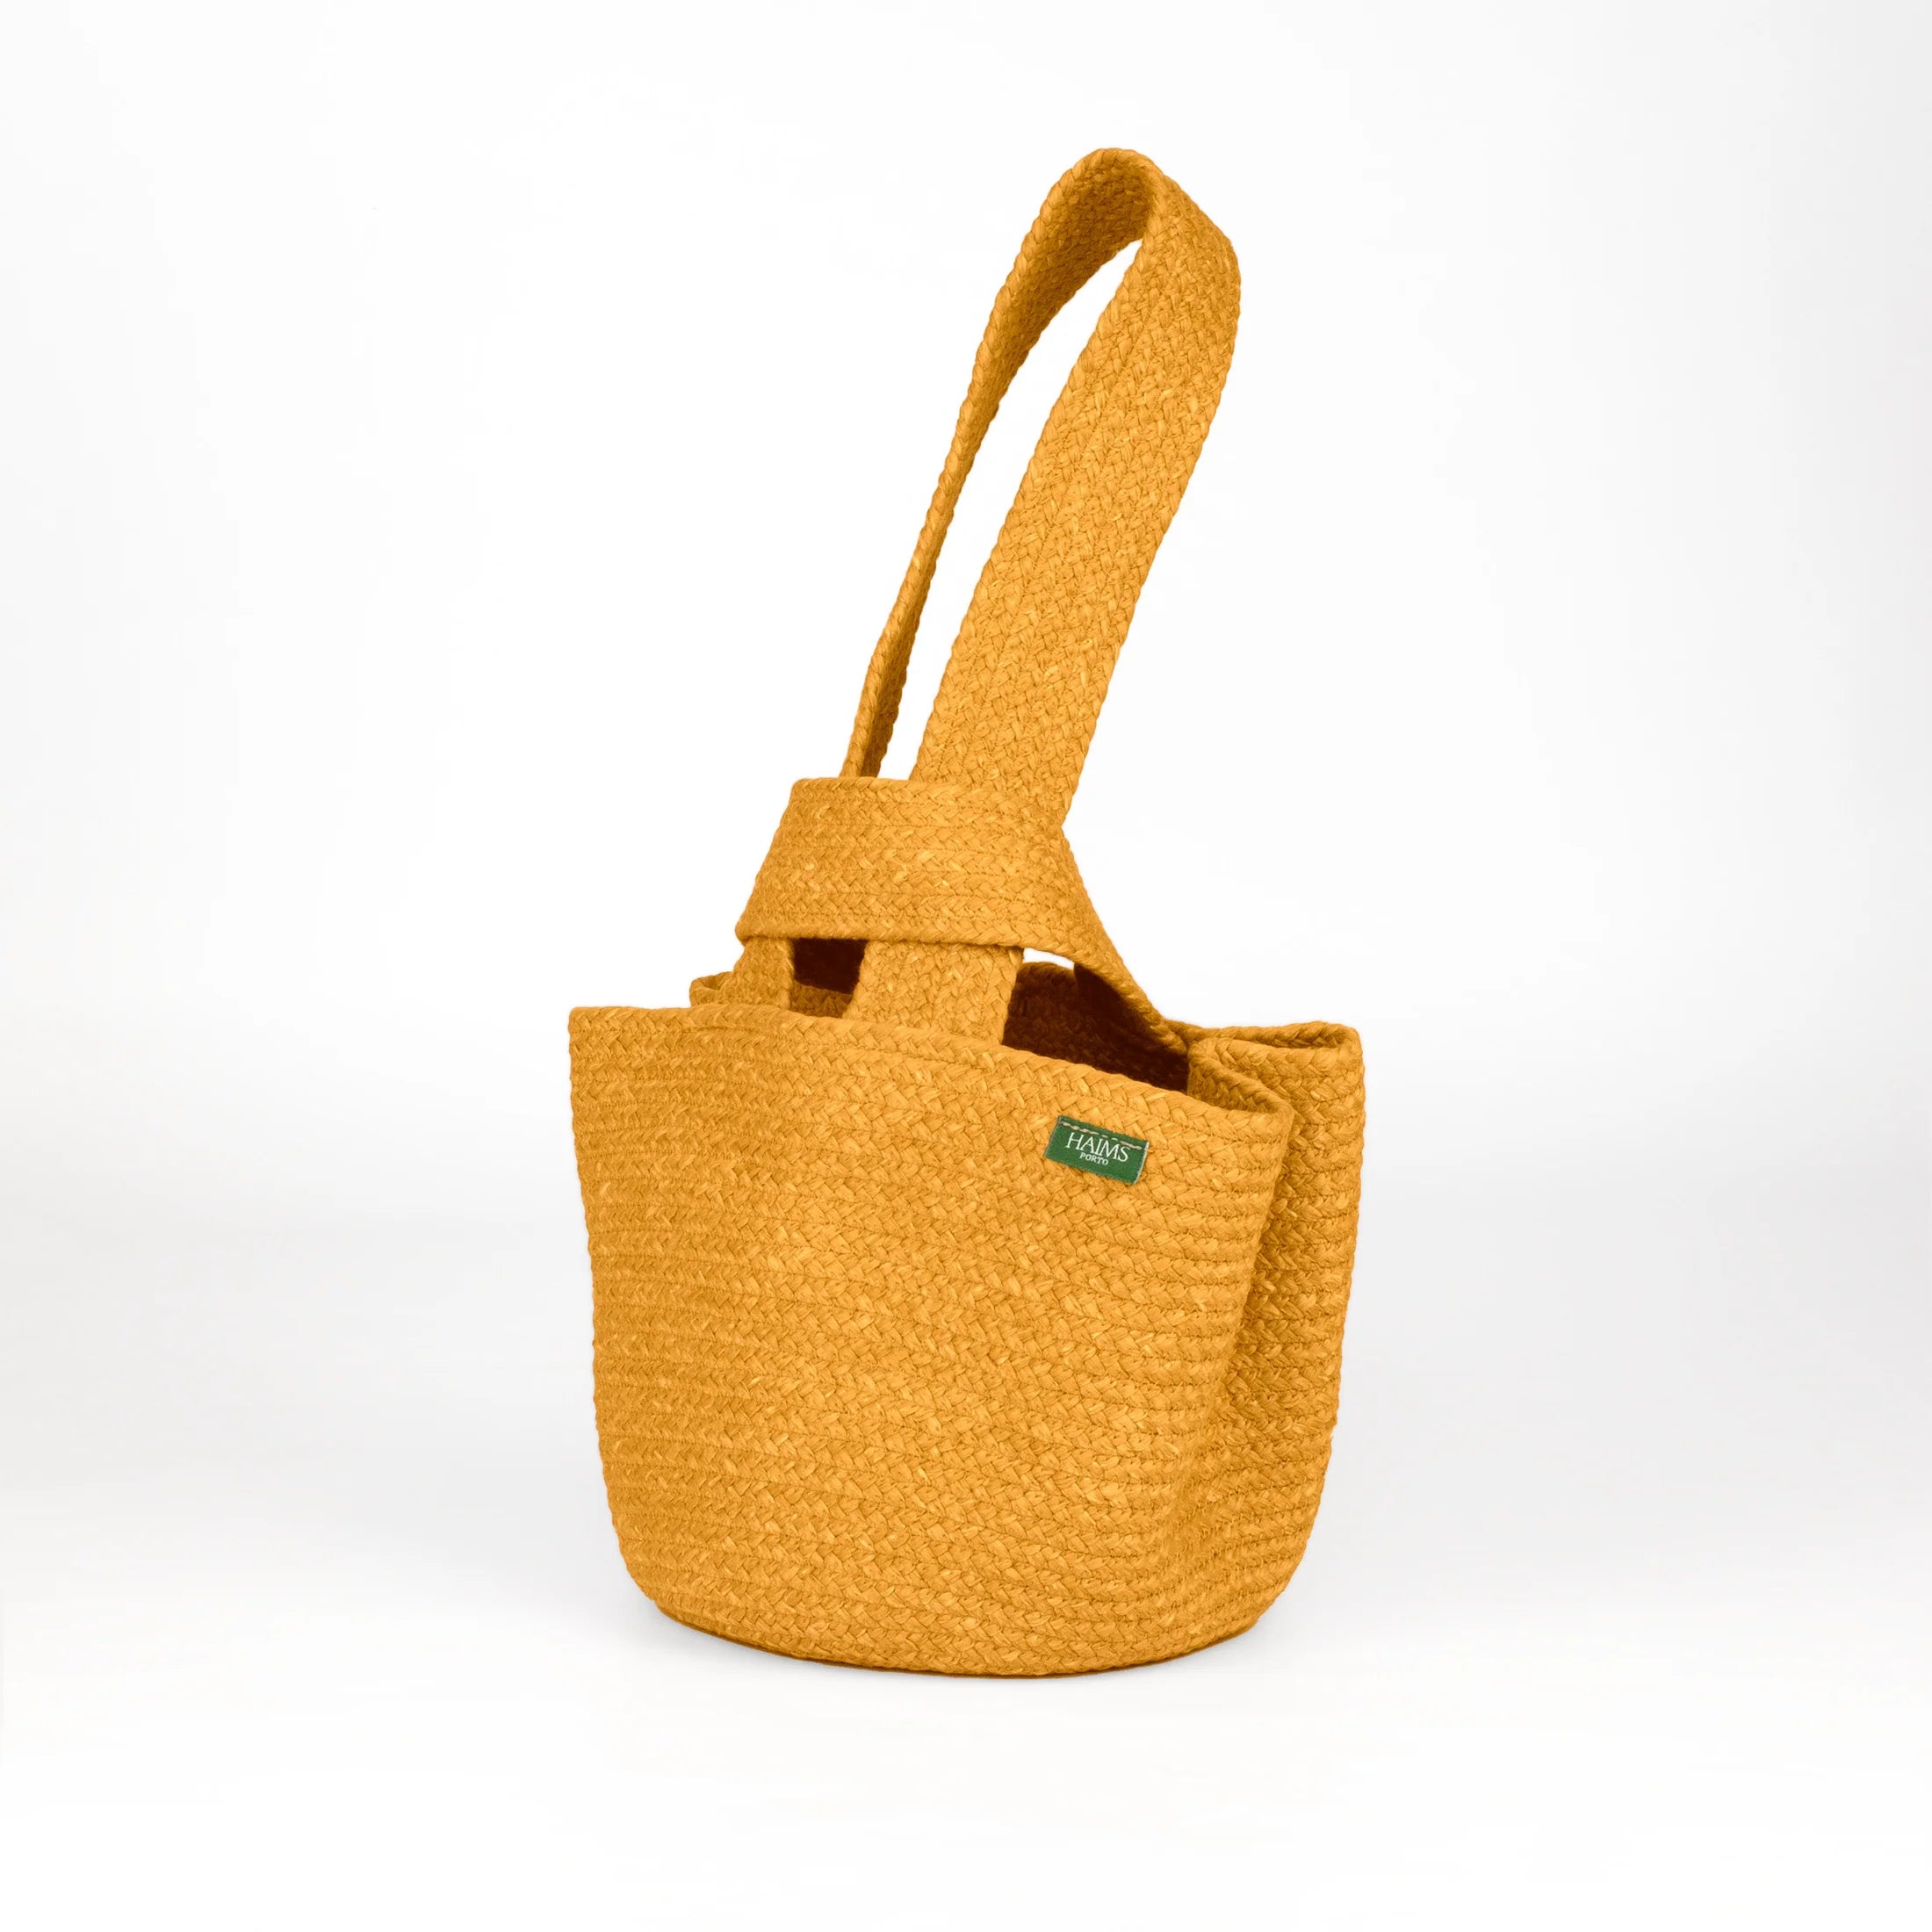 Alma Sustainable Small Handbag in Honey